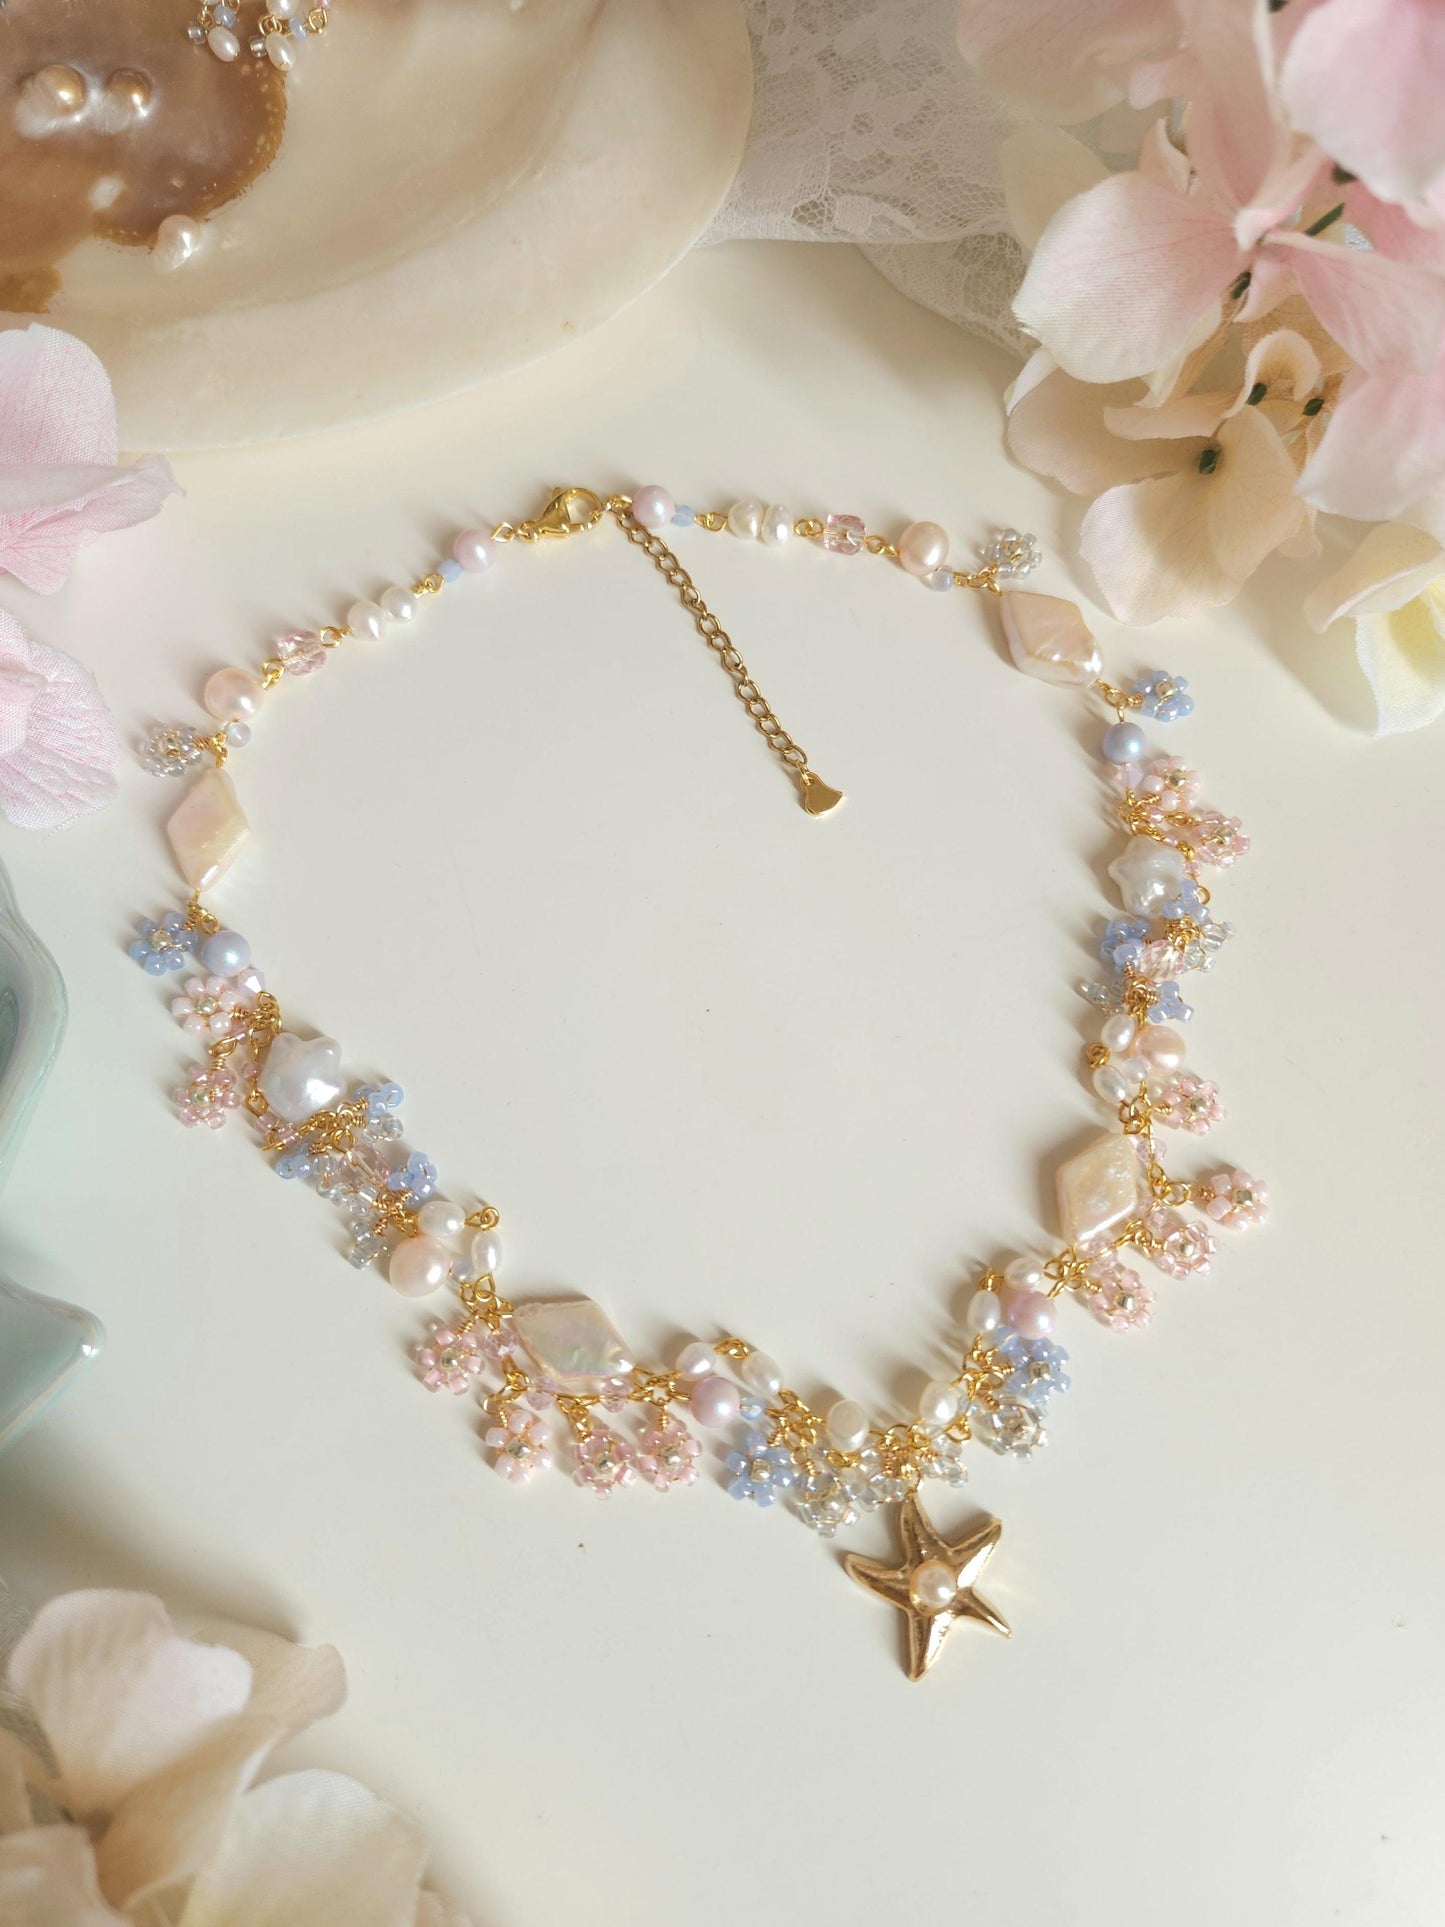 Seaside Serenade Necklace - By Cocoyu